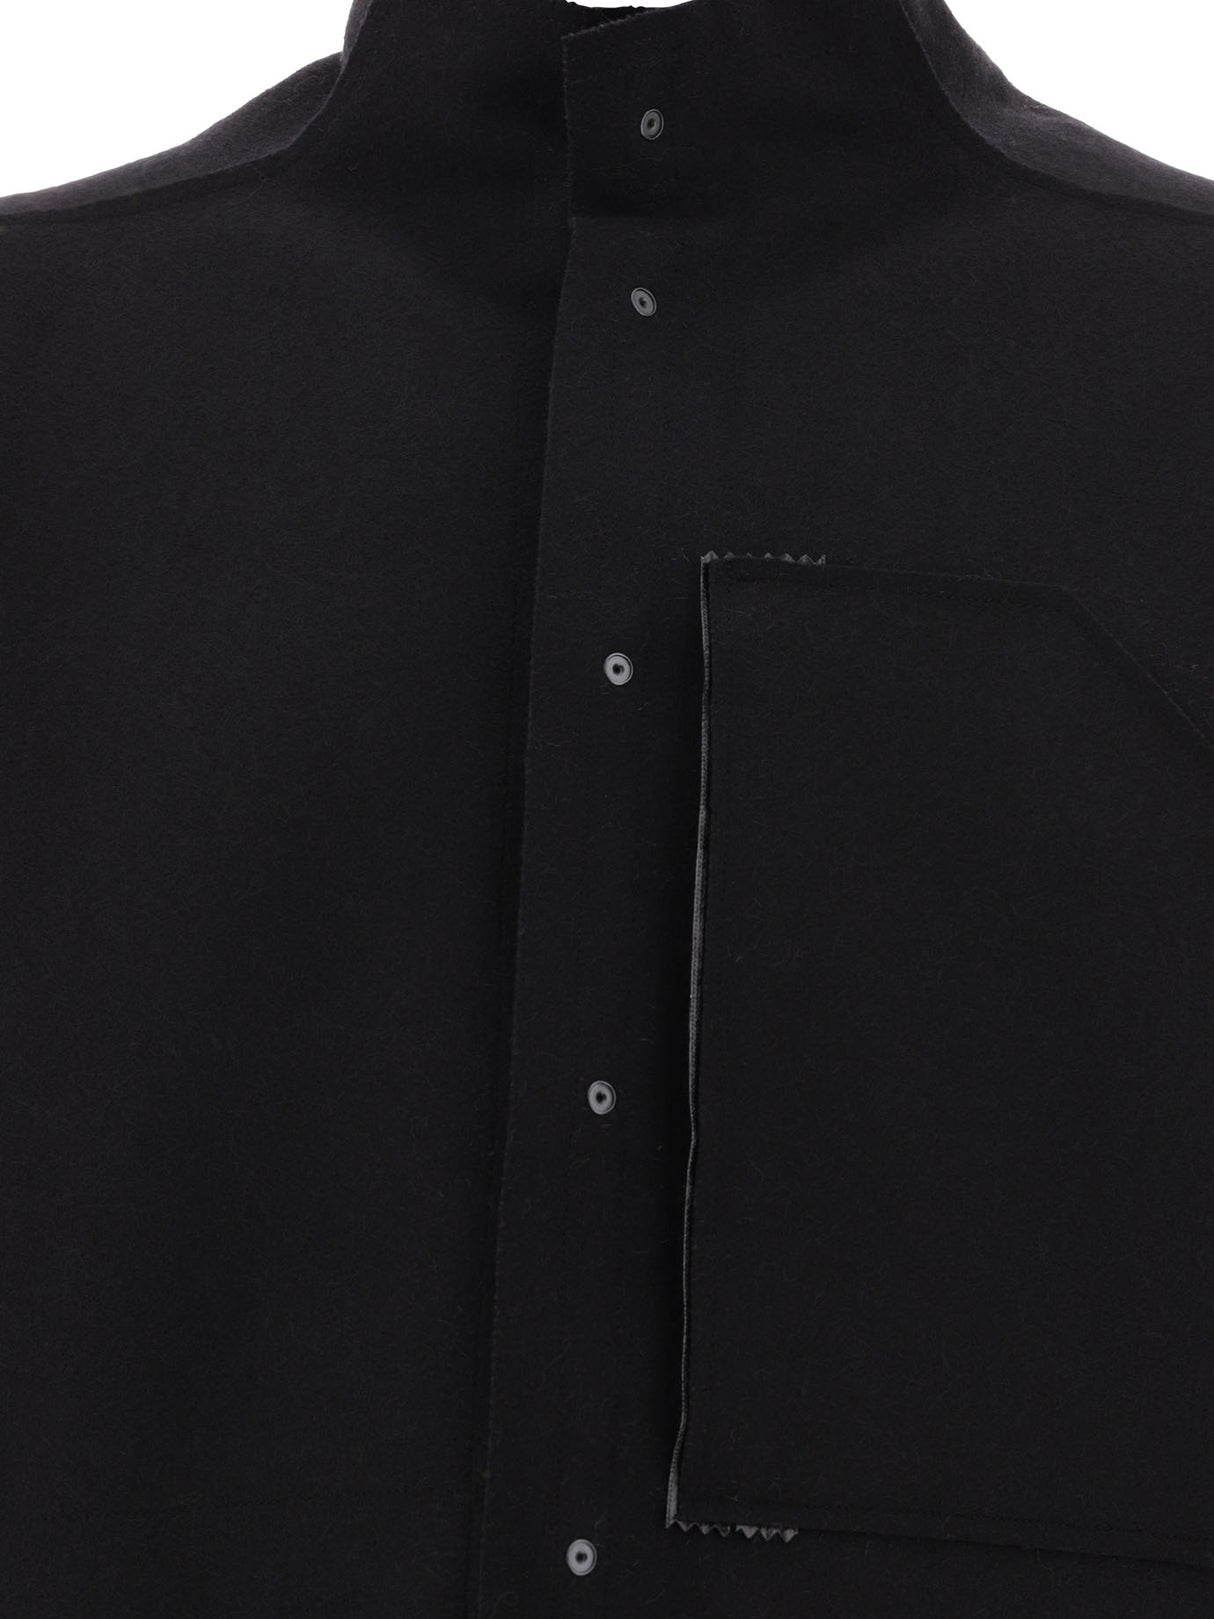 男士黑色羊毛外套 FW23 系列 ACRONYM